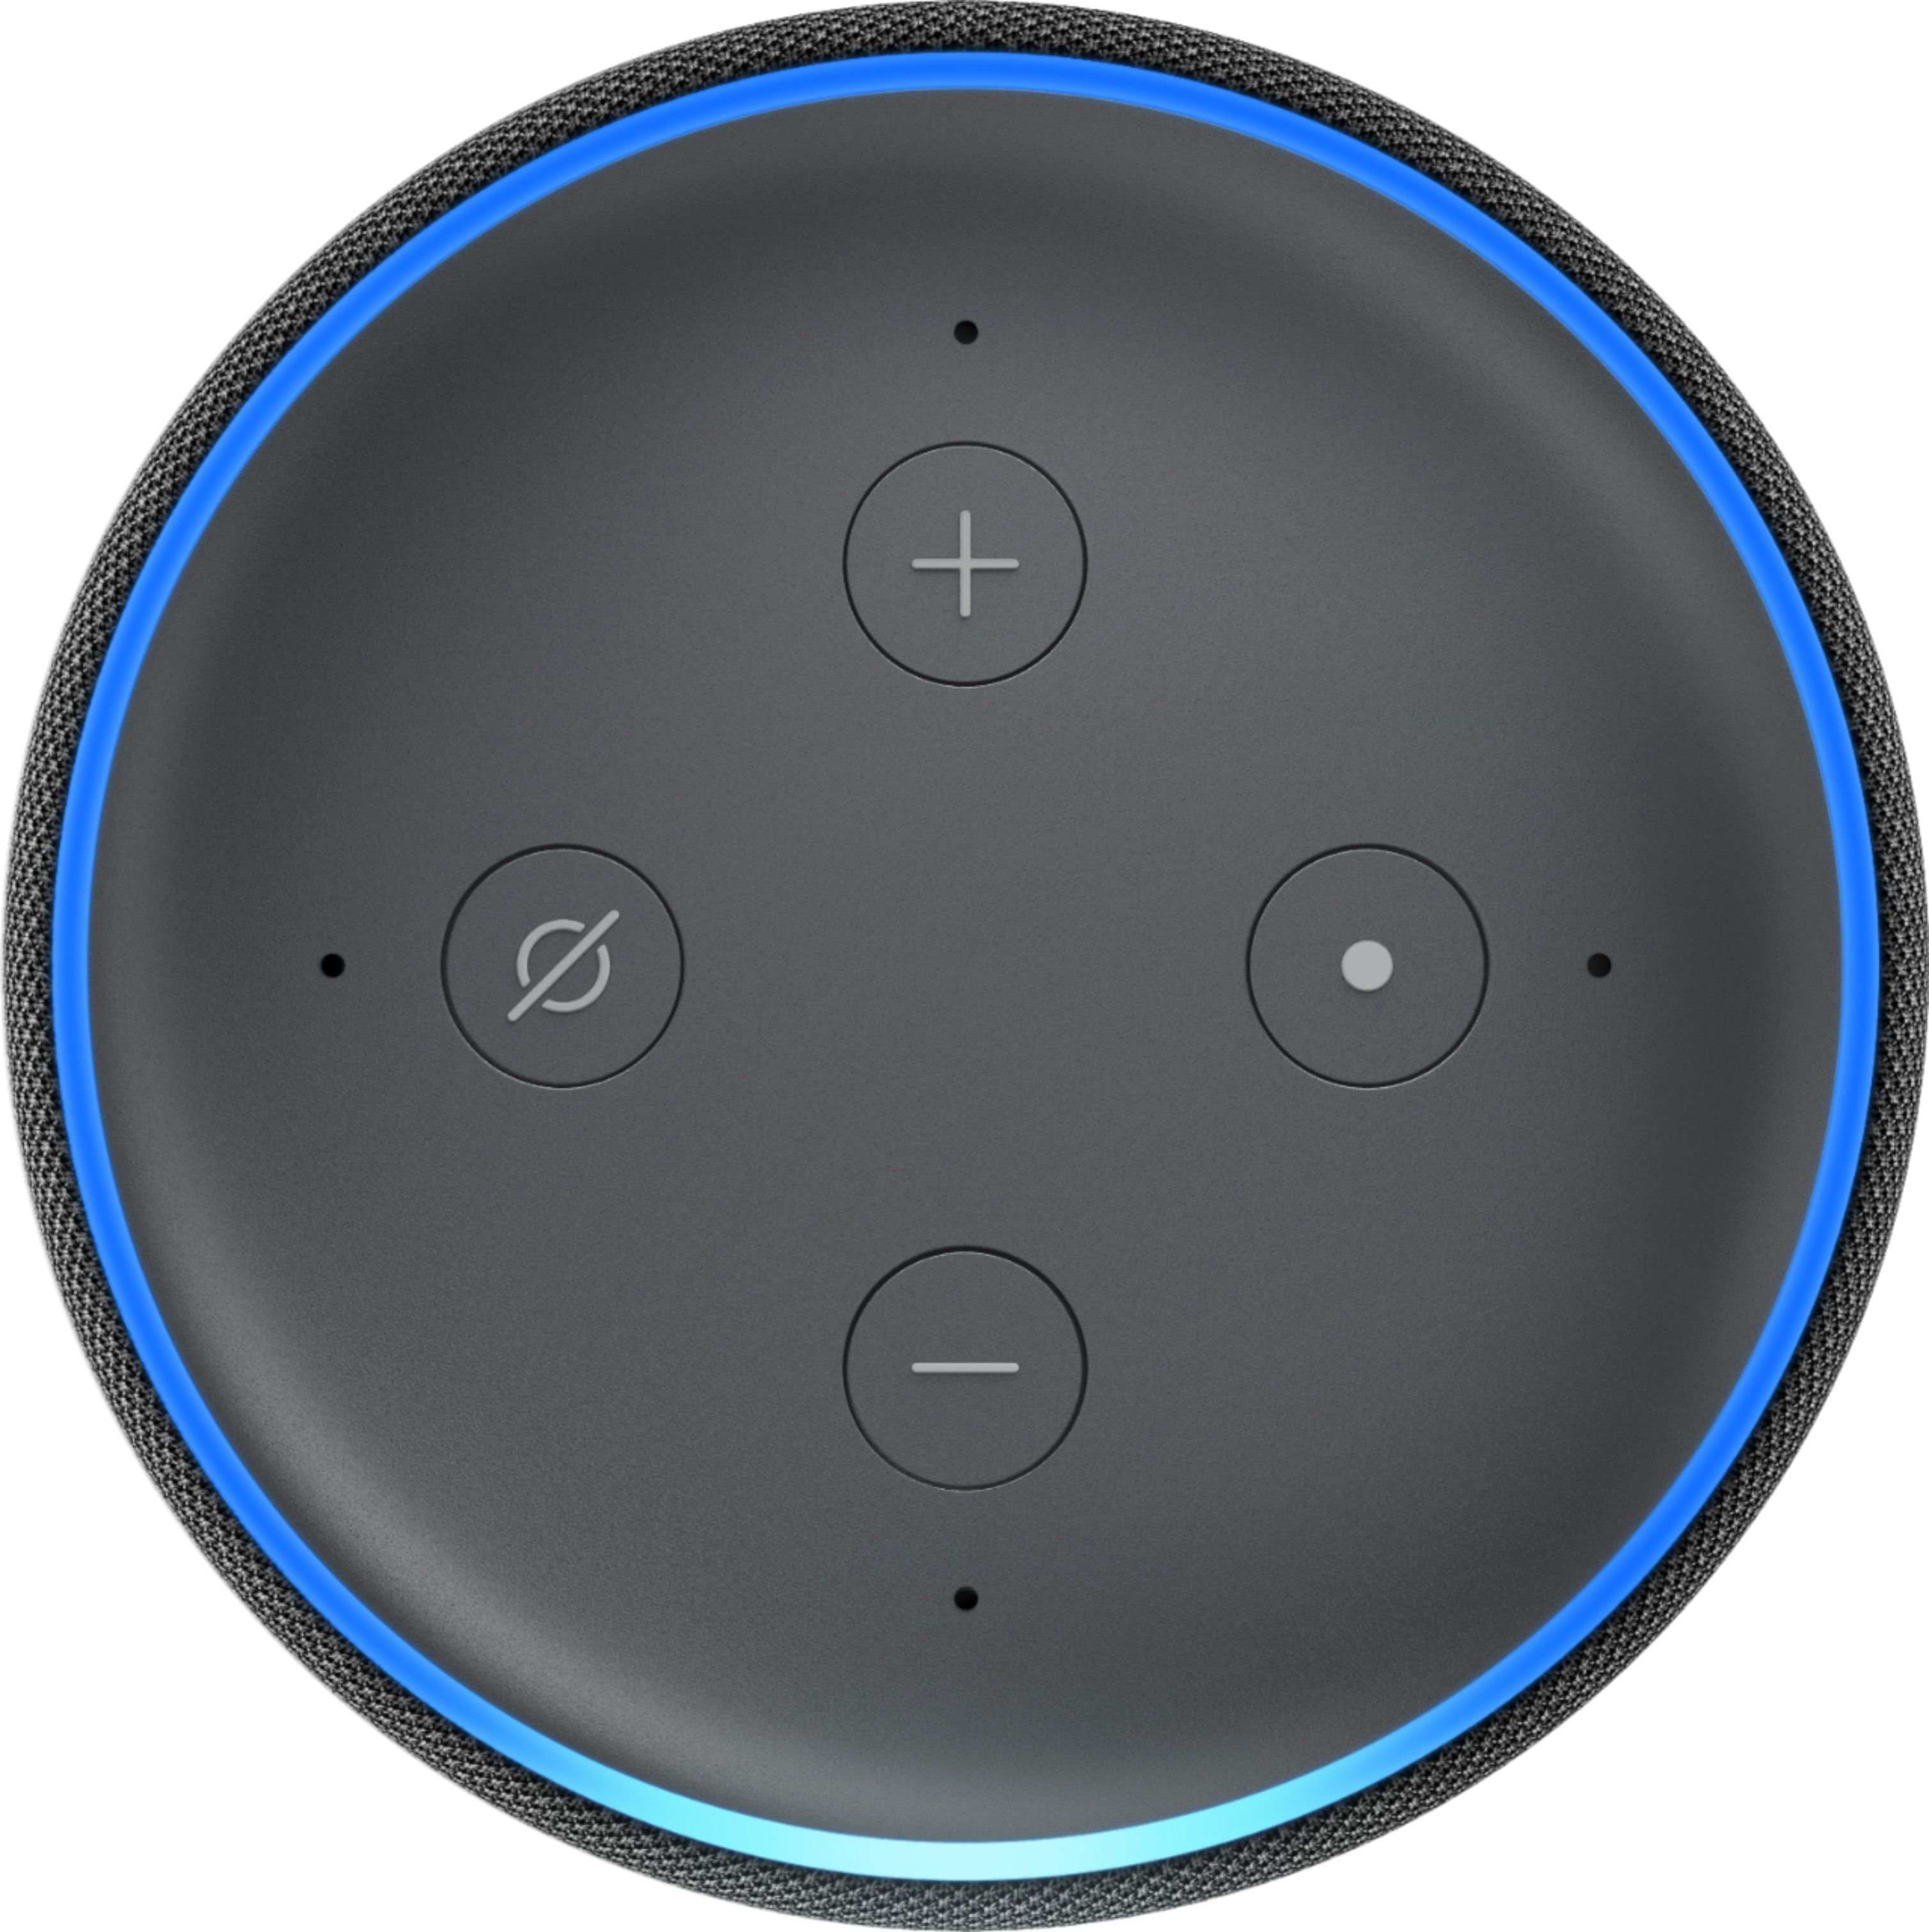 3.Generation Smart Lautsprecher Alexa Neu & OVP Amazon Echo Dot schwarz 